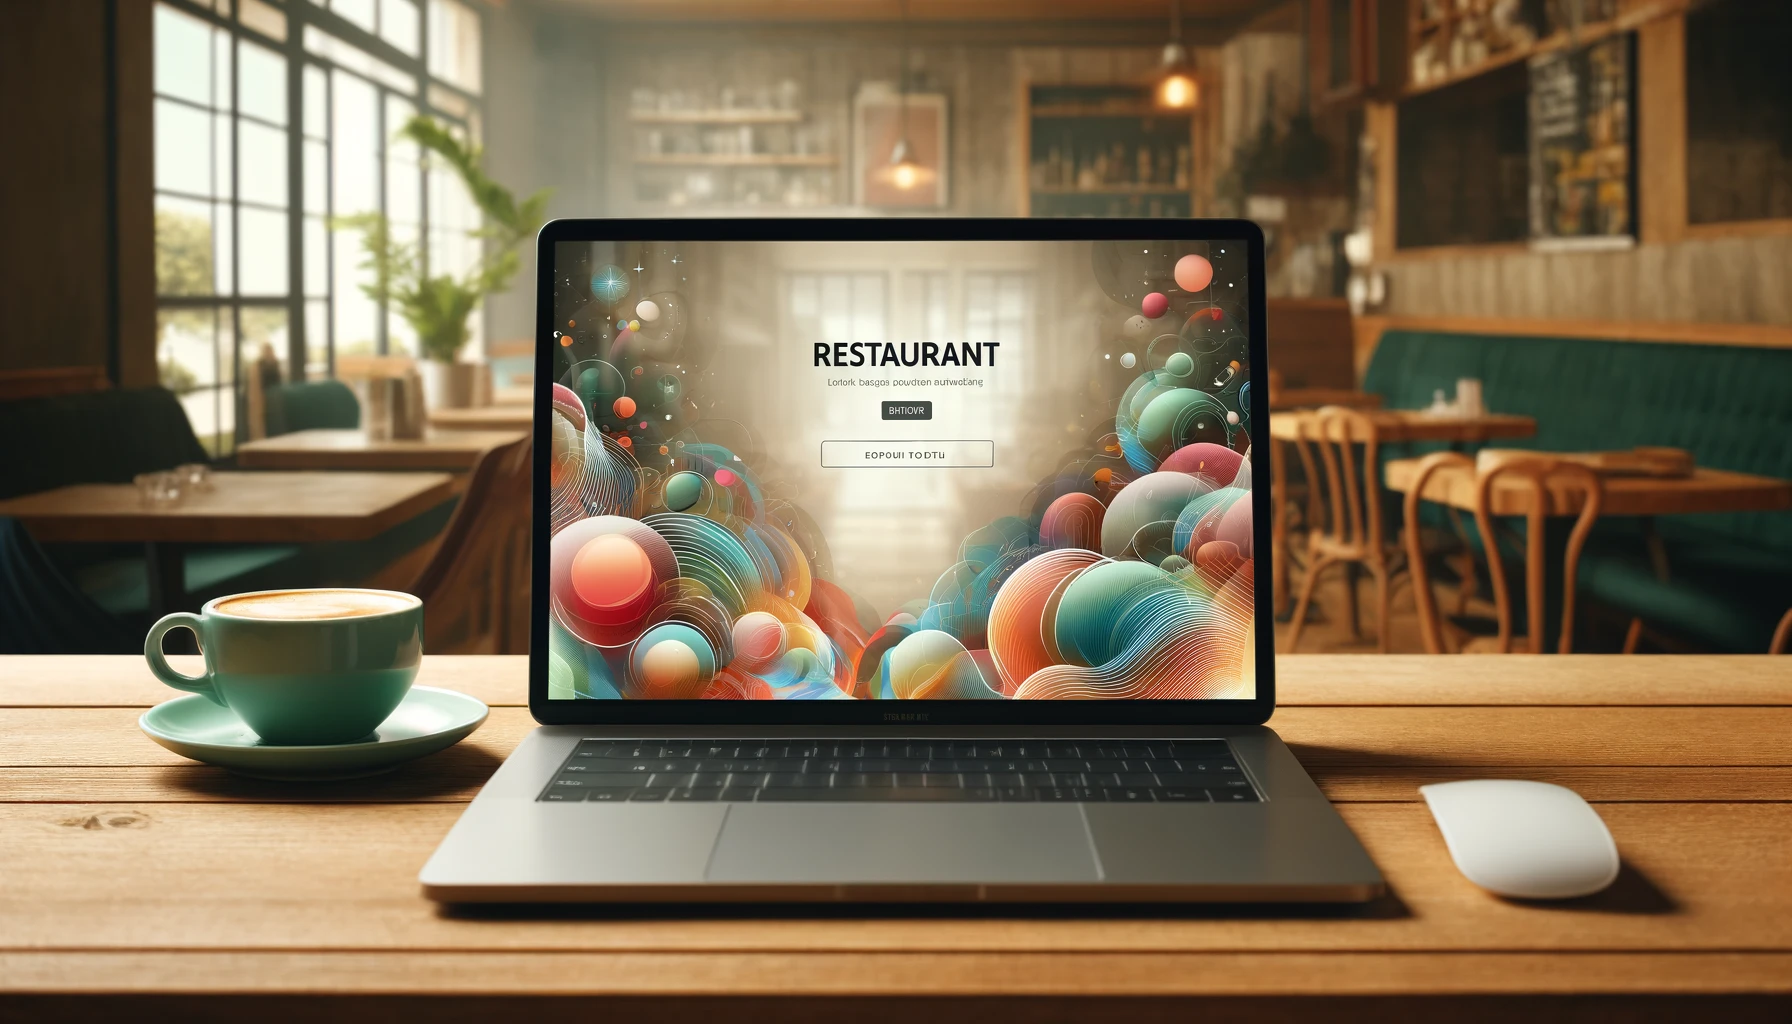 Laptop ekranında canlı ve renkli bir restoran web sitesi arayüzü gösteren resim, kafe ortamında bir masa üzerinde yer alırken, fincan kahve eşliğinde konuksever bir atmosfer sunuyor.